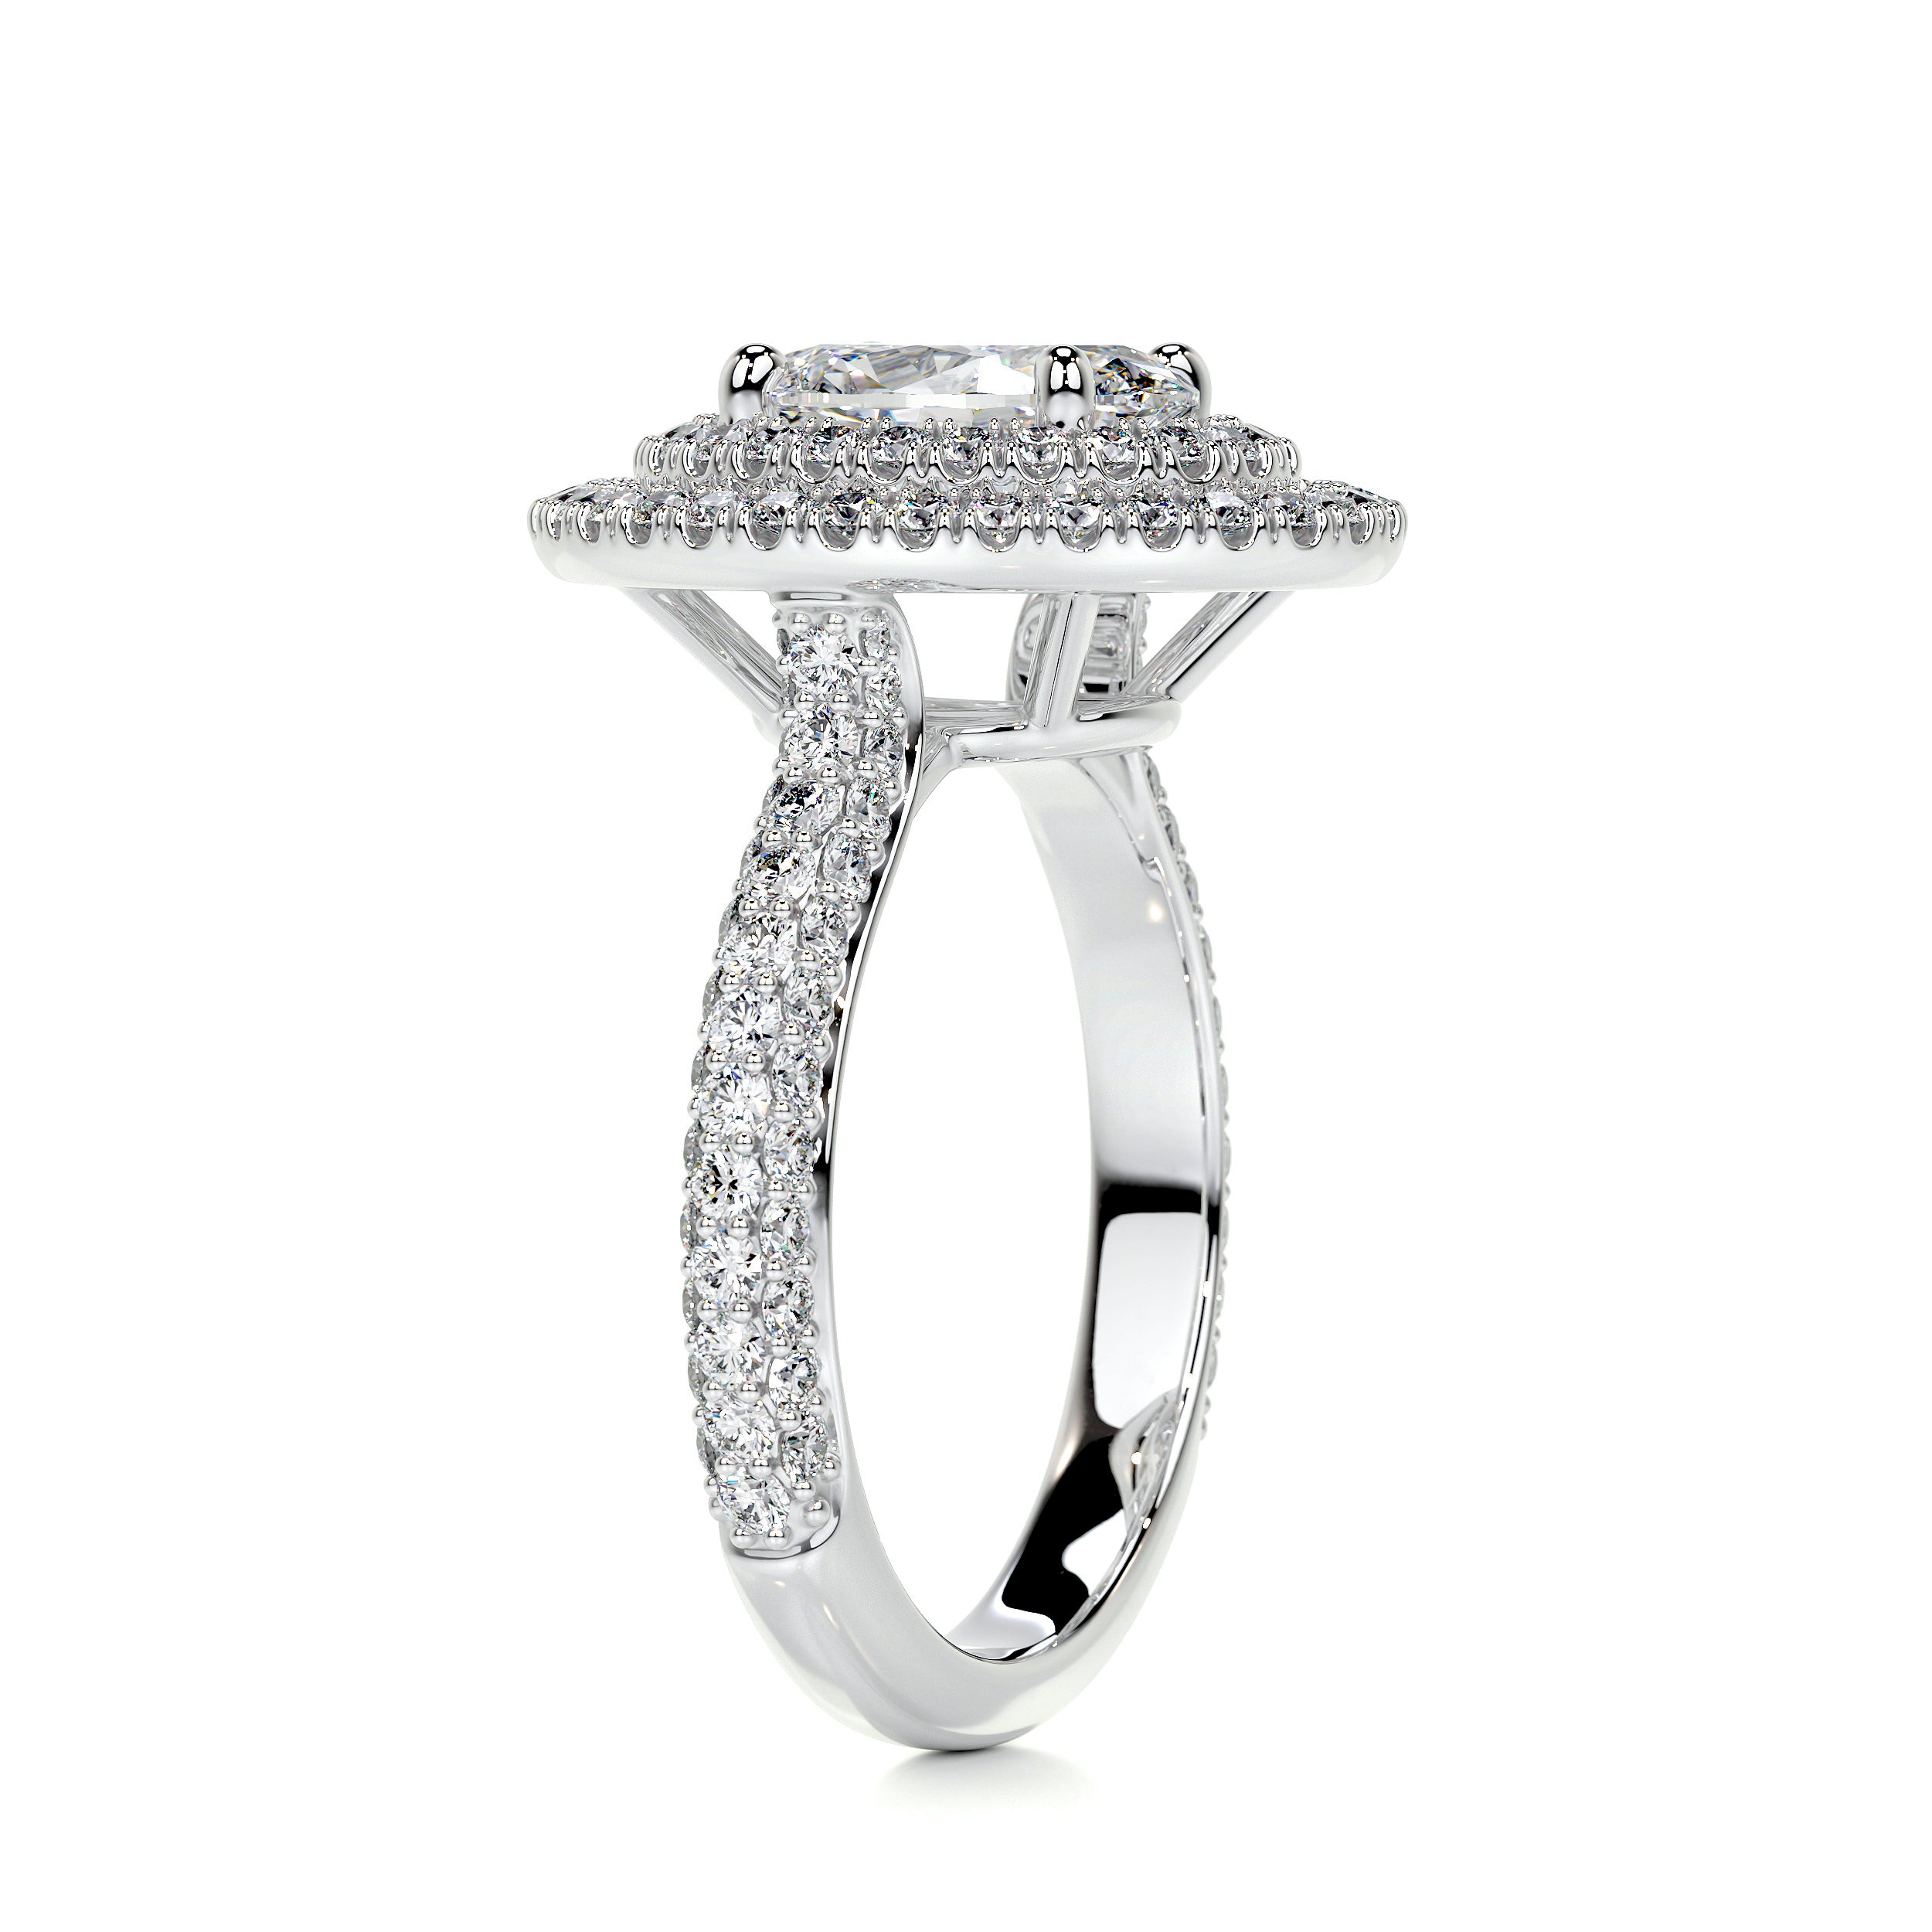 Nora Diamond Engagement Ring   (2.35 Carat) -18K White Gold